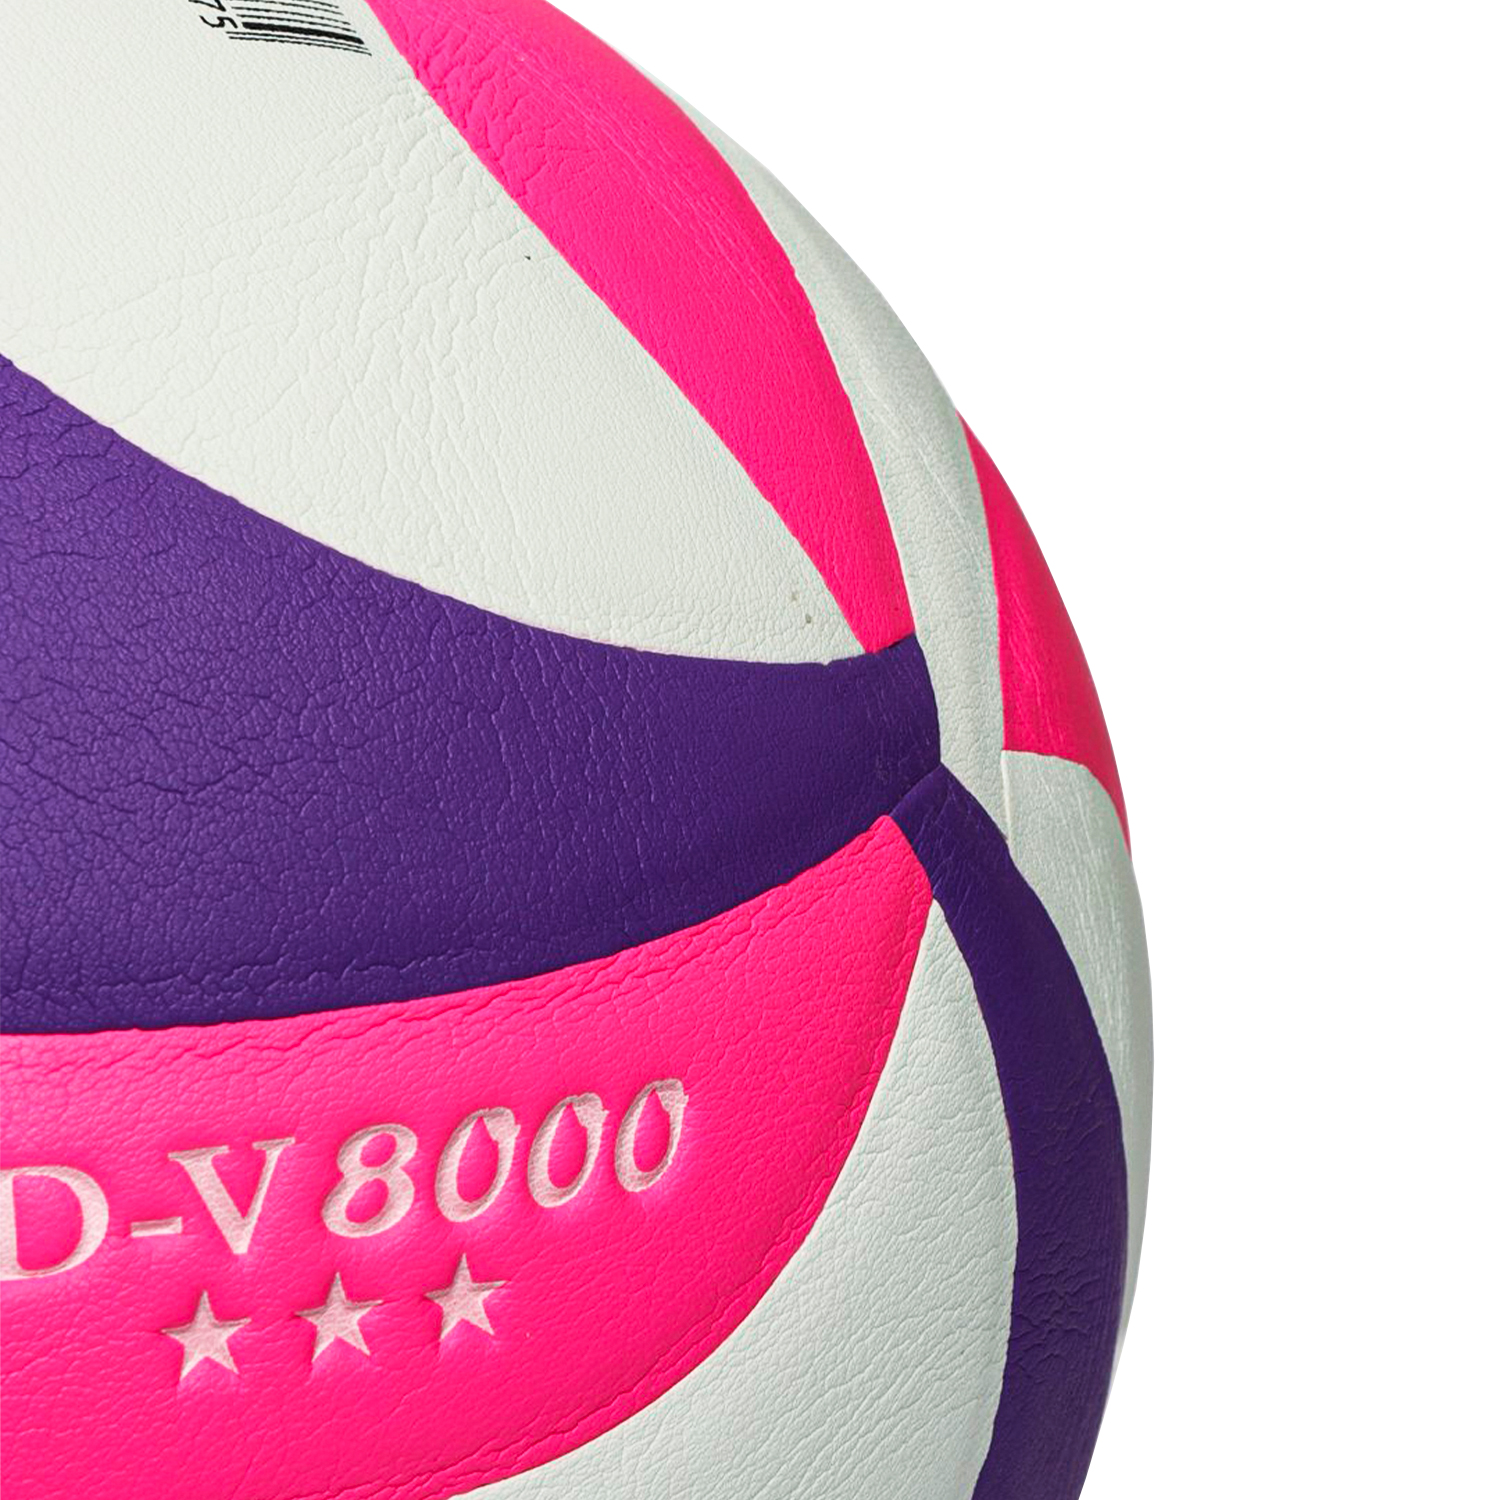 волейбольный-мяч-powergym-8000, купить волейбольный мяч